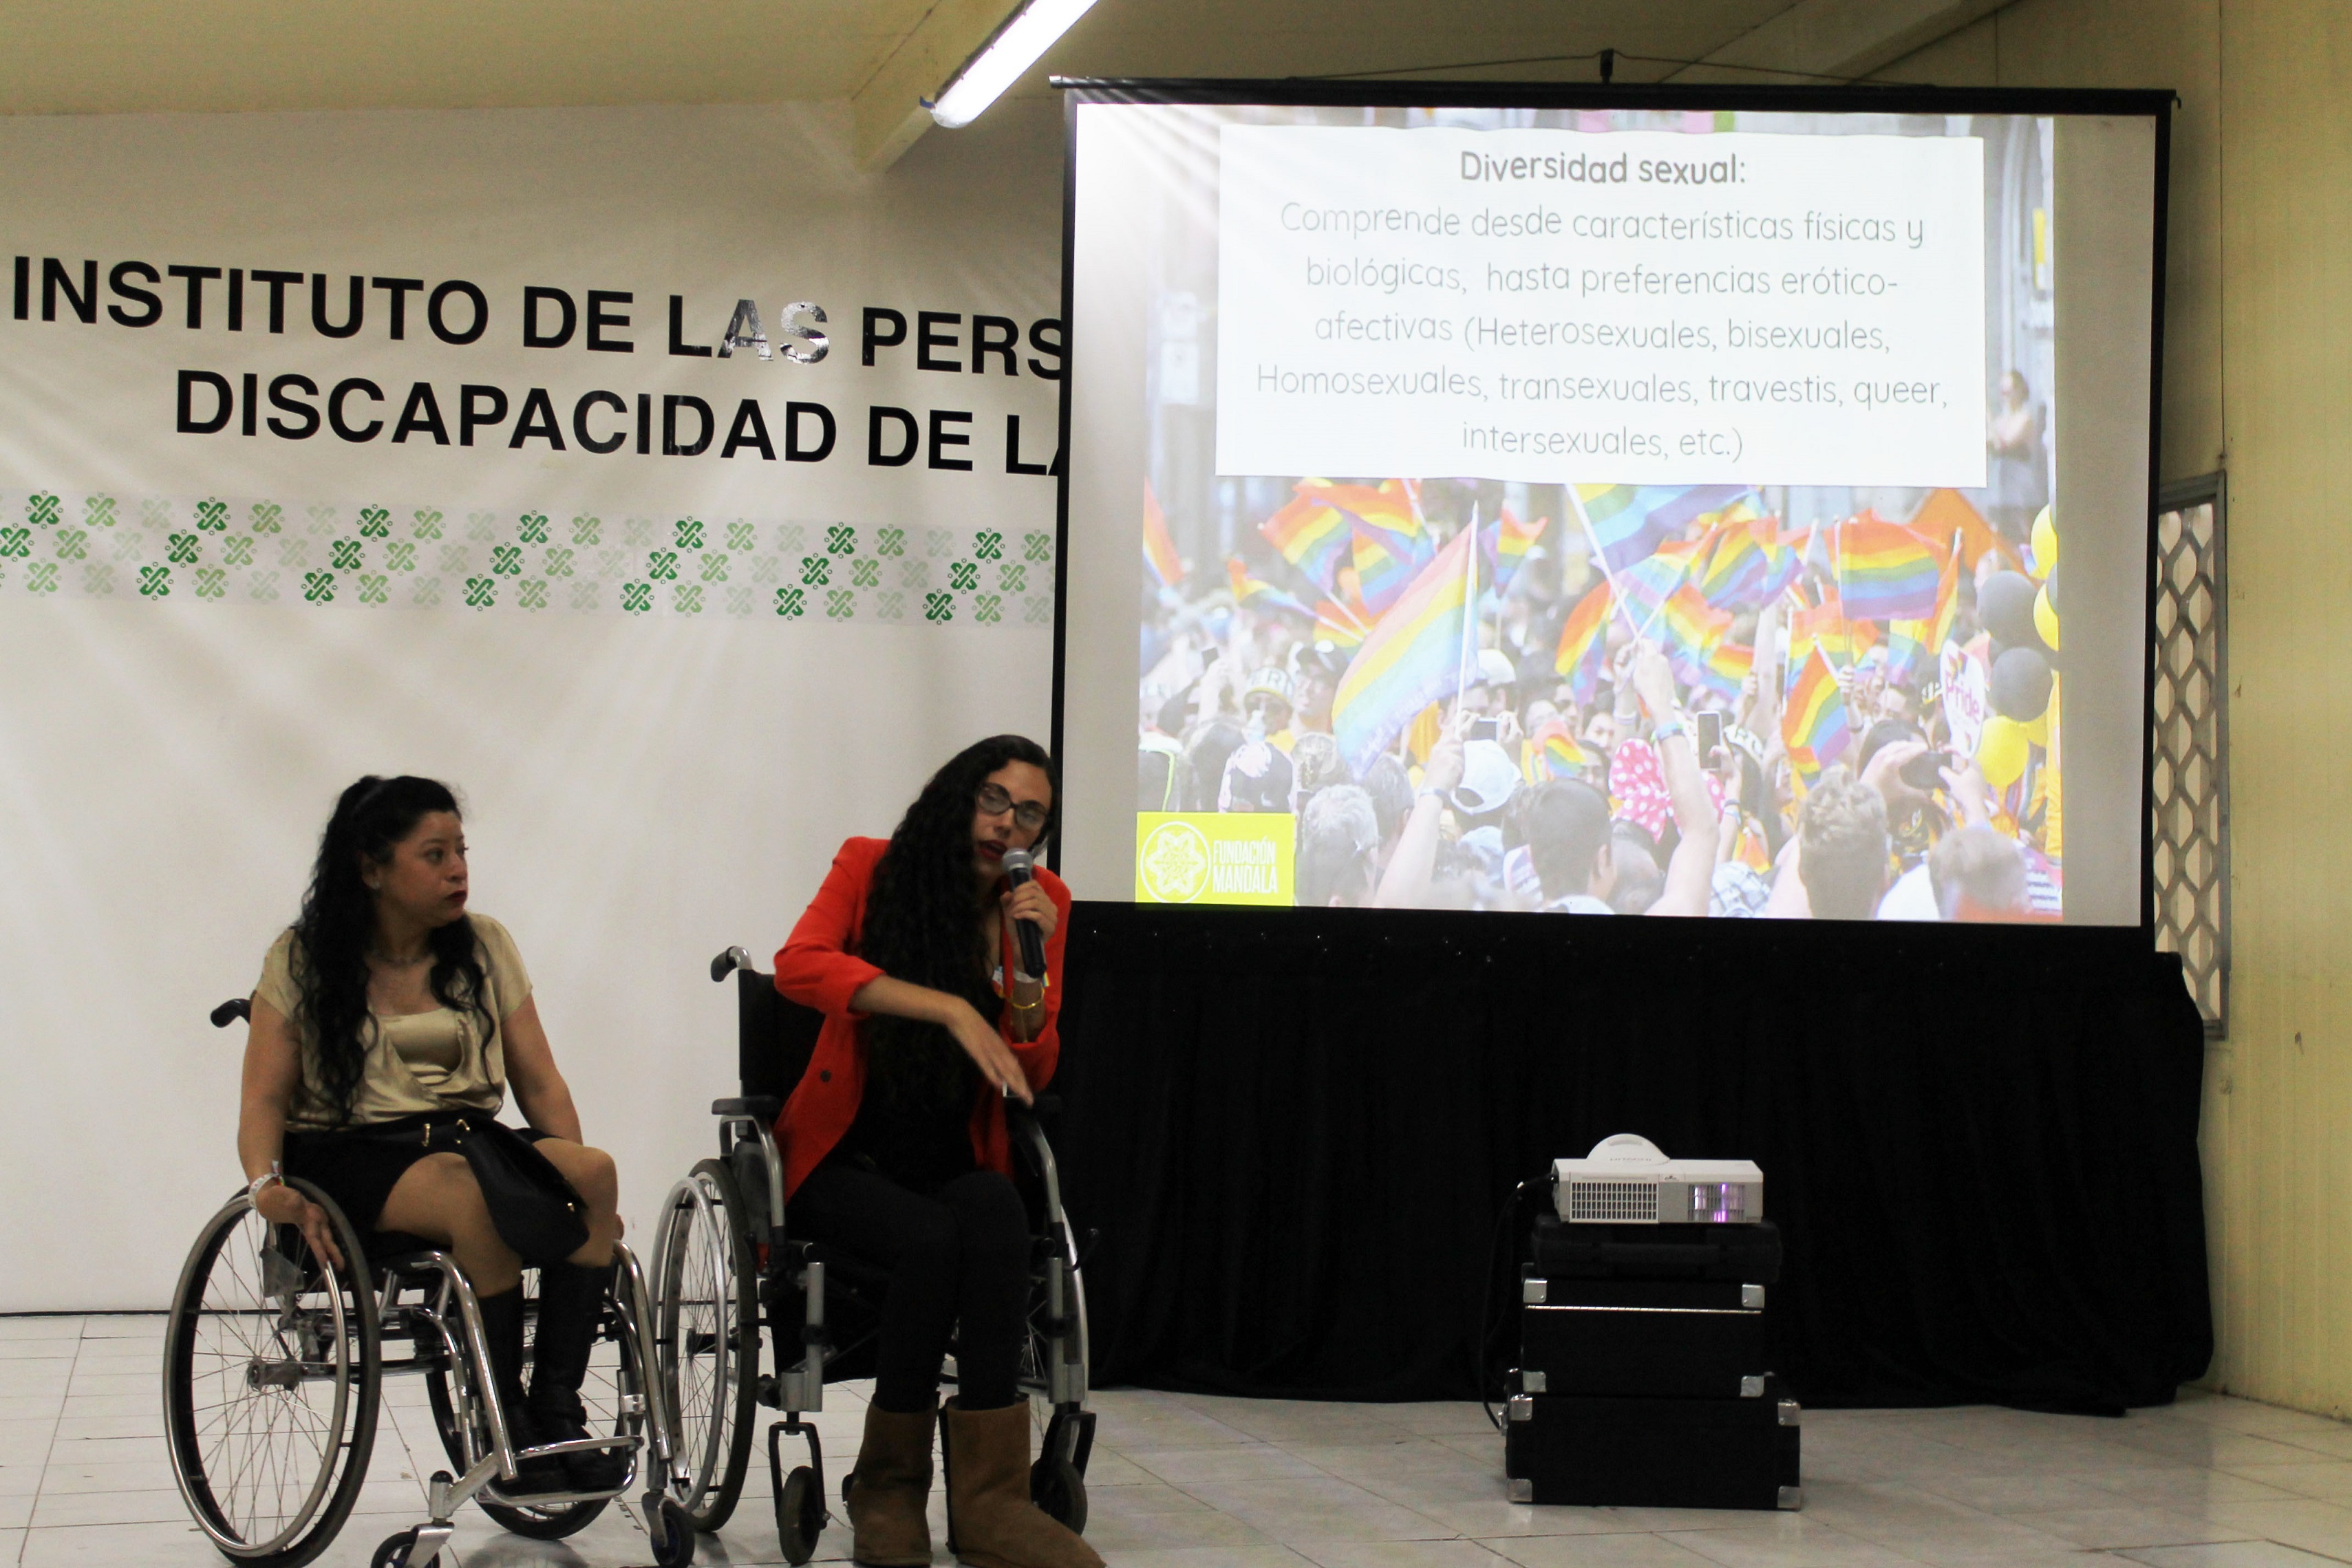 Fotografia ponenetes hablando de diversidad sexual en silla de ruedas